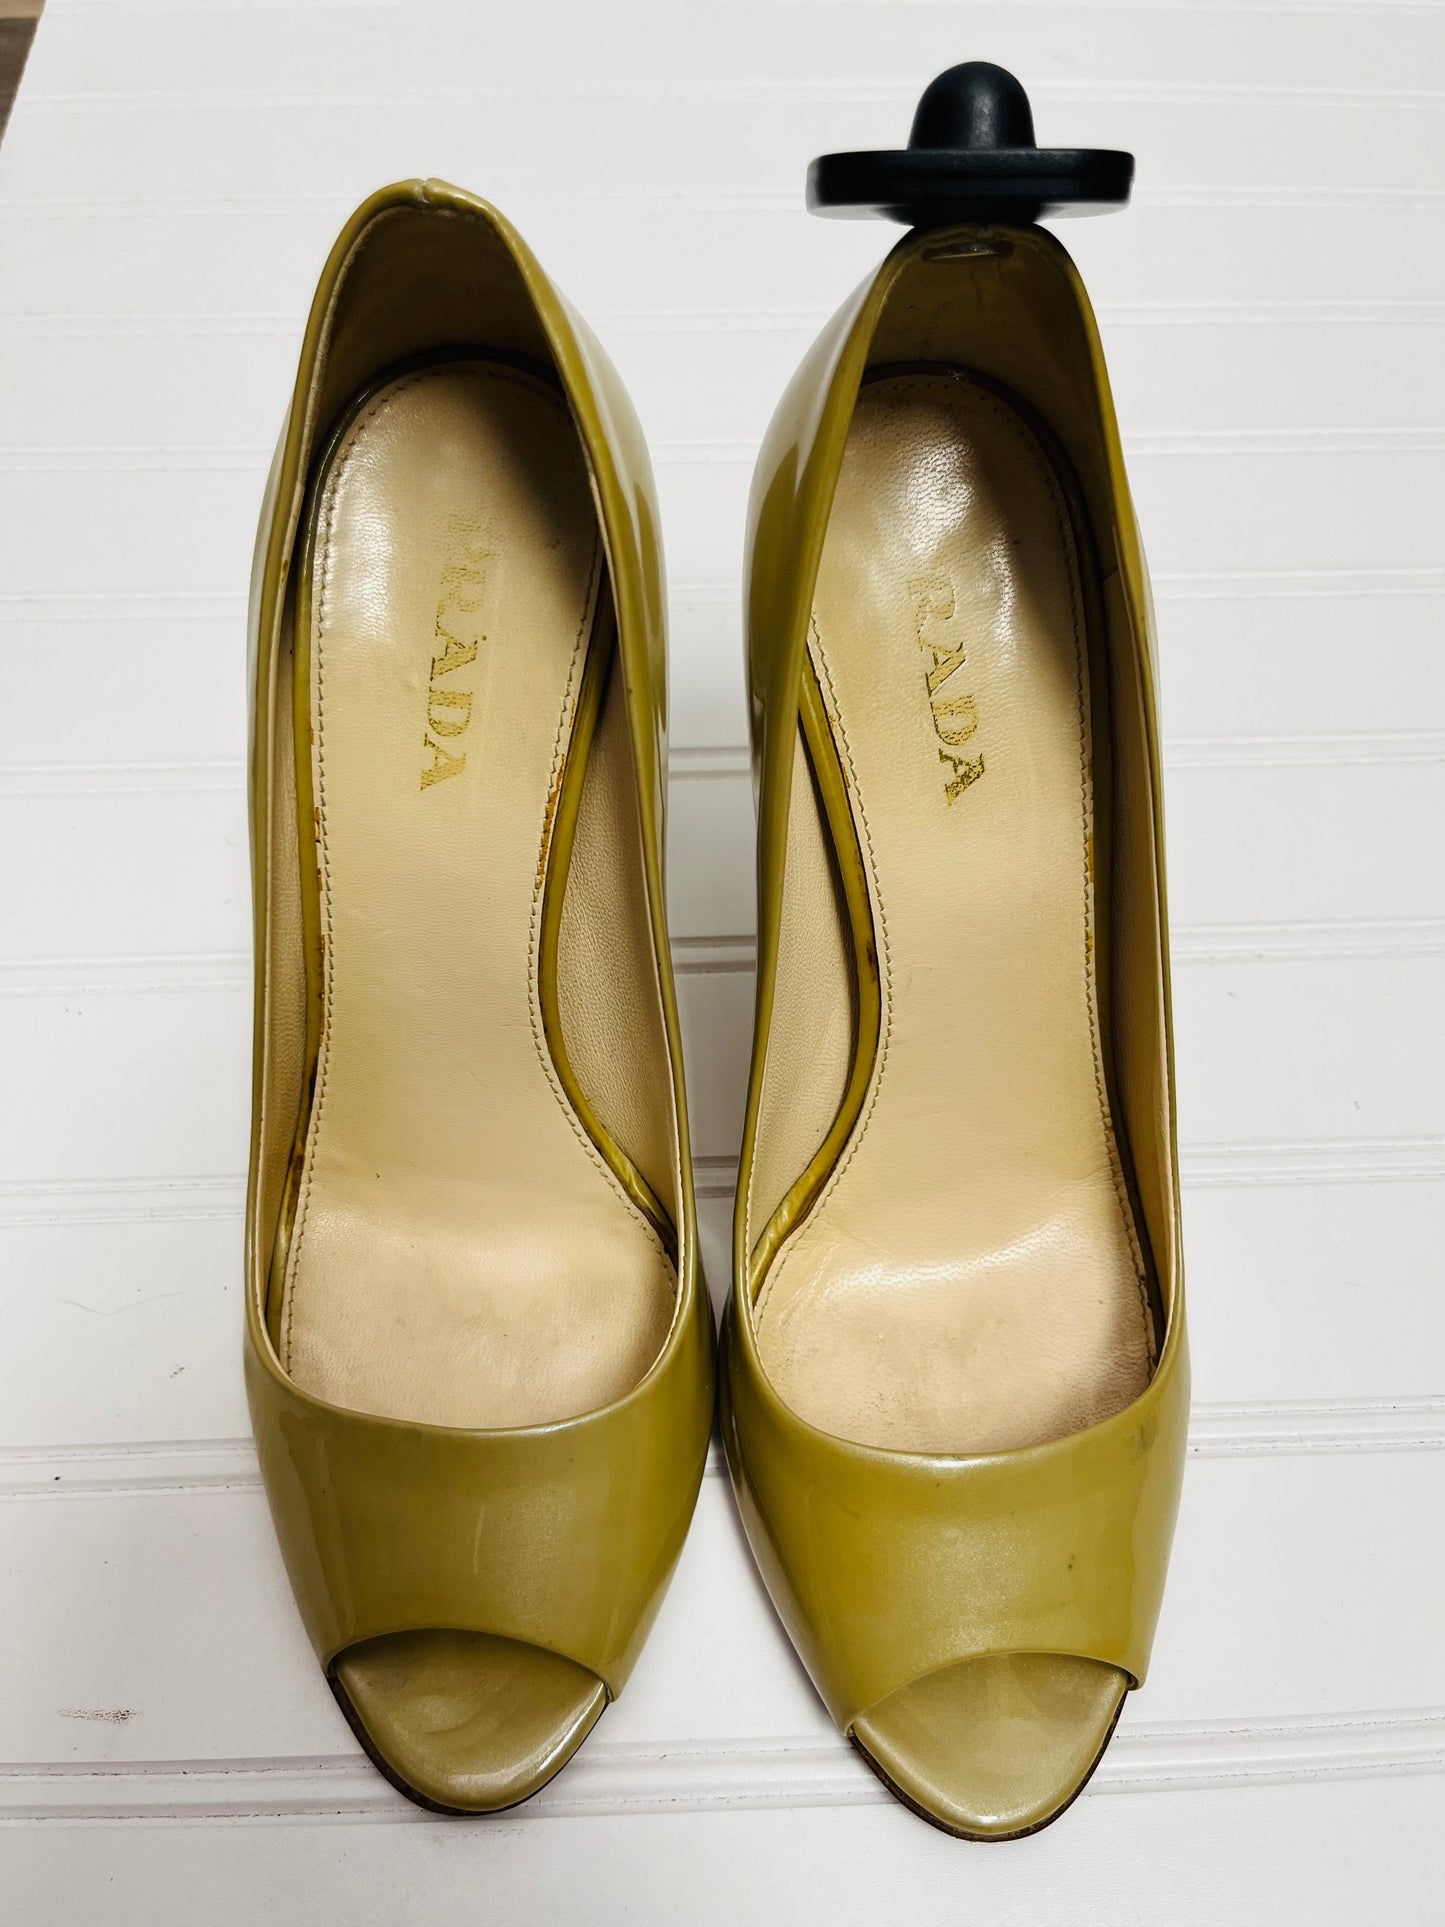 Tan Shoes Heels Stiletto Prada, Size 6.5